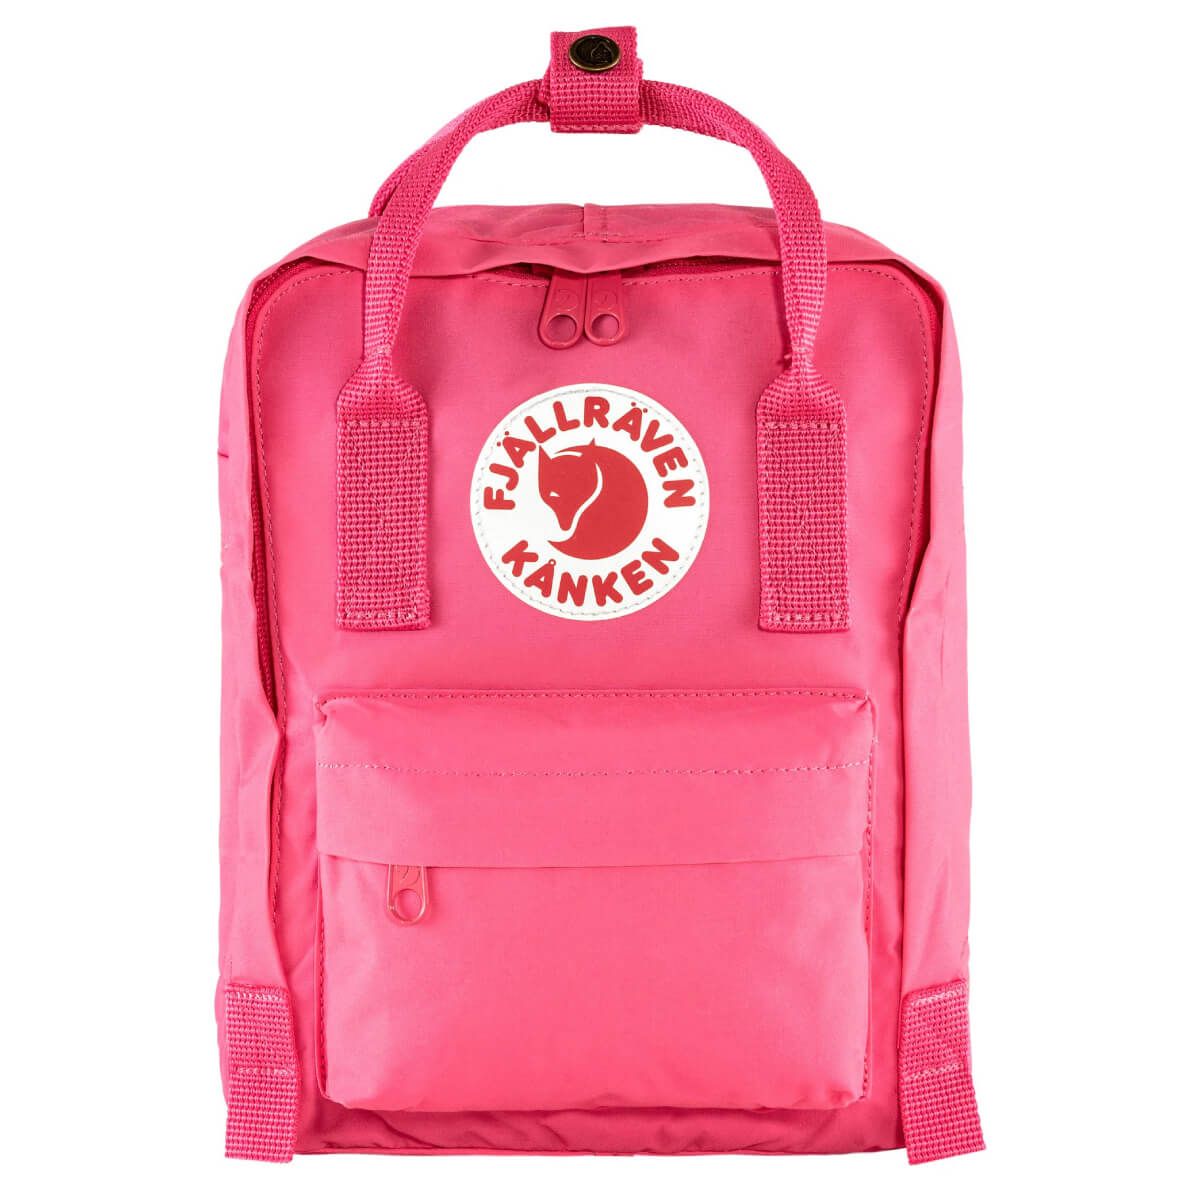 Городской рюкзак Fjallraven Kanken Mini Flamingo Pink 7 л 23561.450